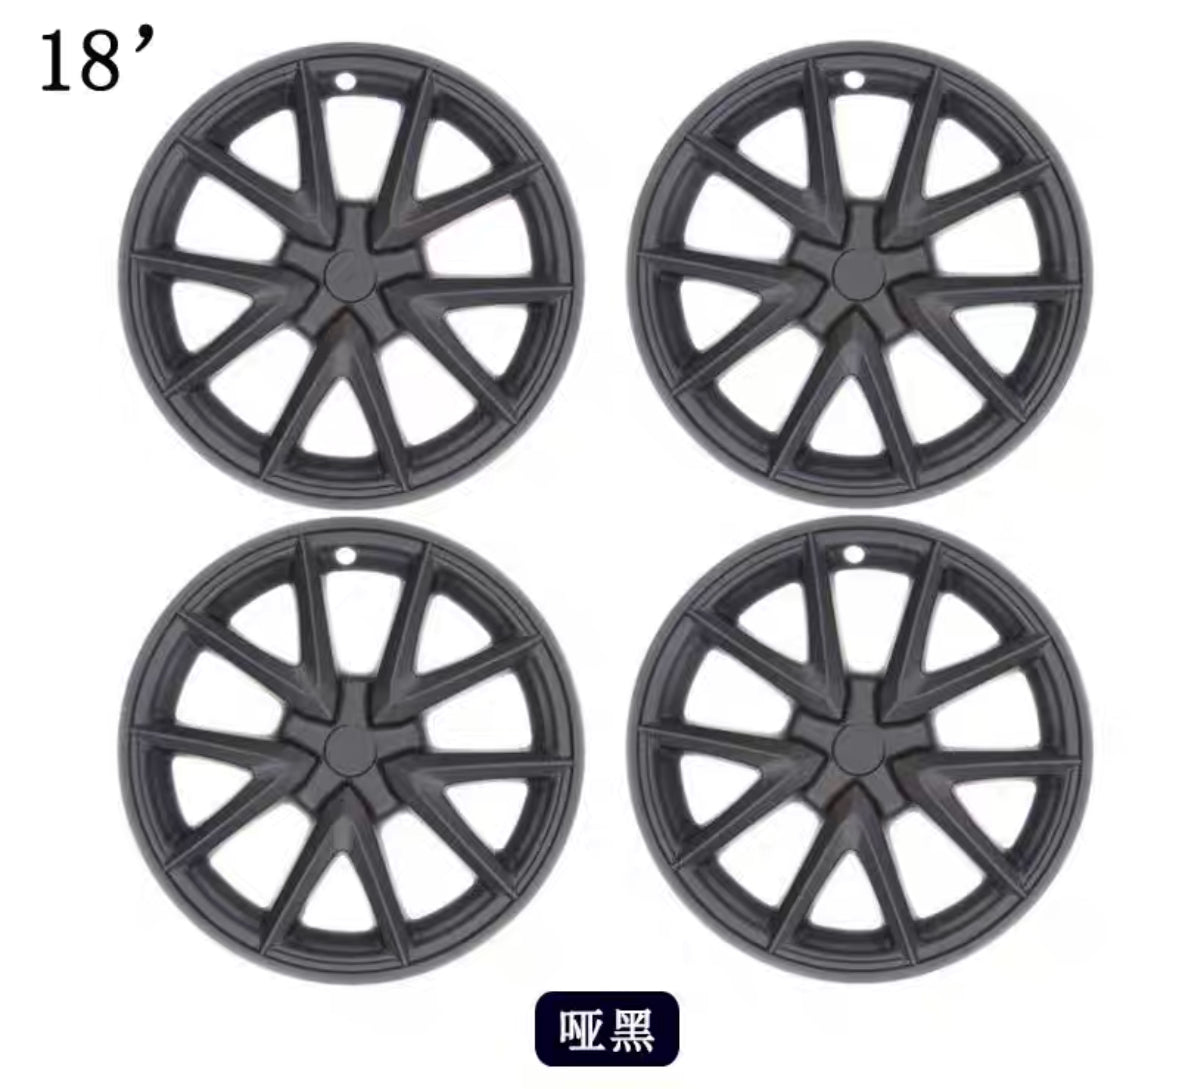 18" inch Wheel Cover Hub Refresh Center Cap For Model 3